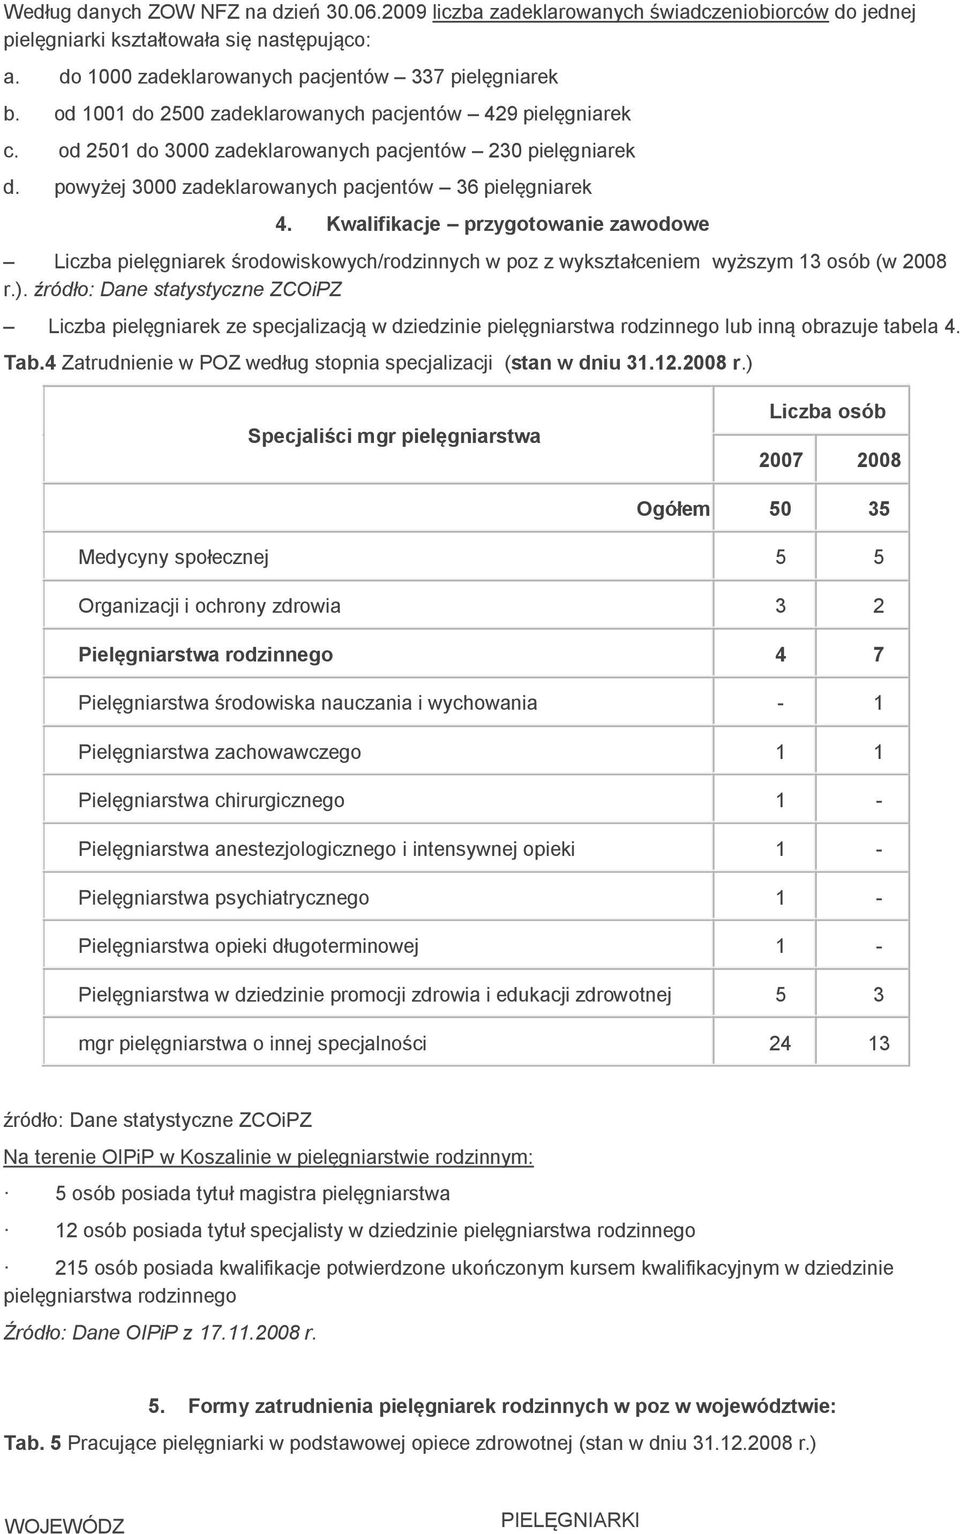 Kwalifikacje przygotowanie zawodowe pielęgniarek środowiskowych/rodzinnych w poz z wykształceniem wyższym 13 osób (w 2008 r.).